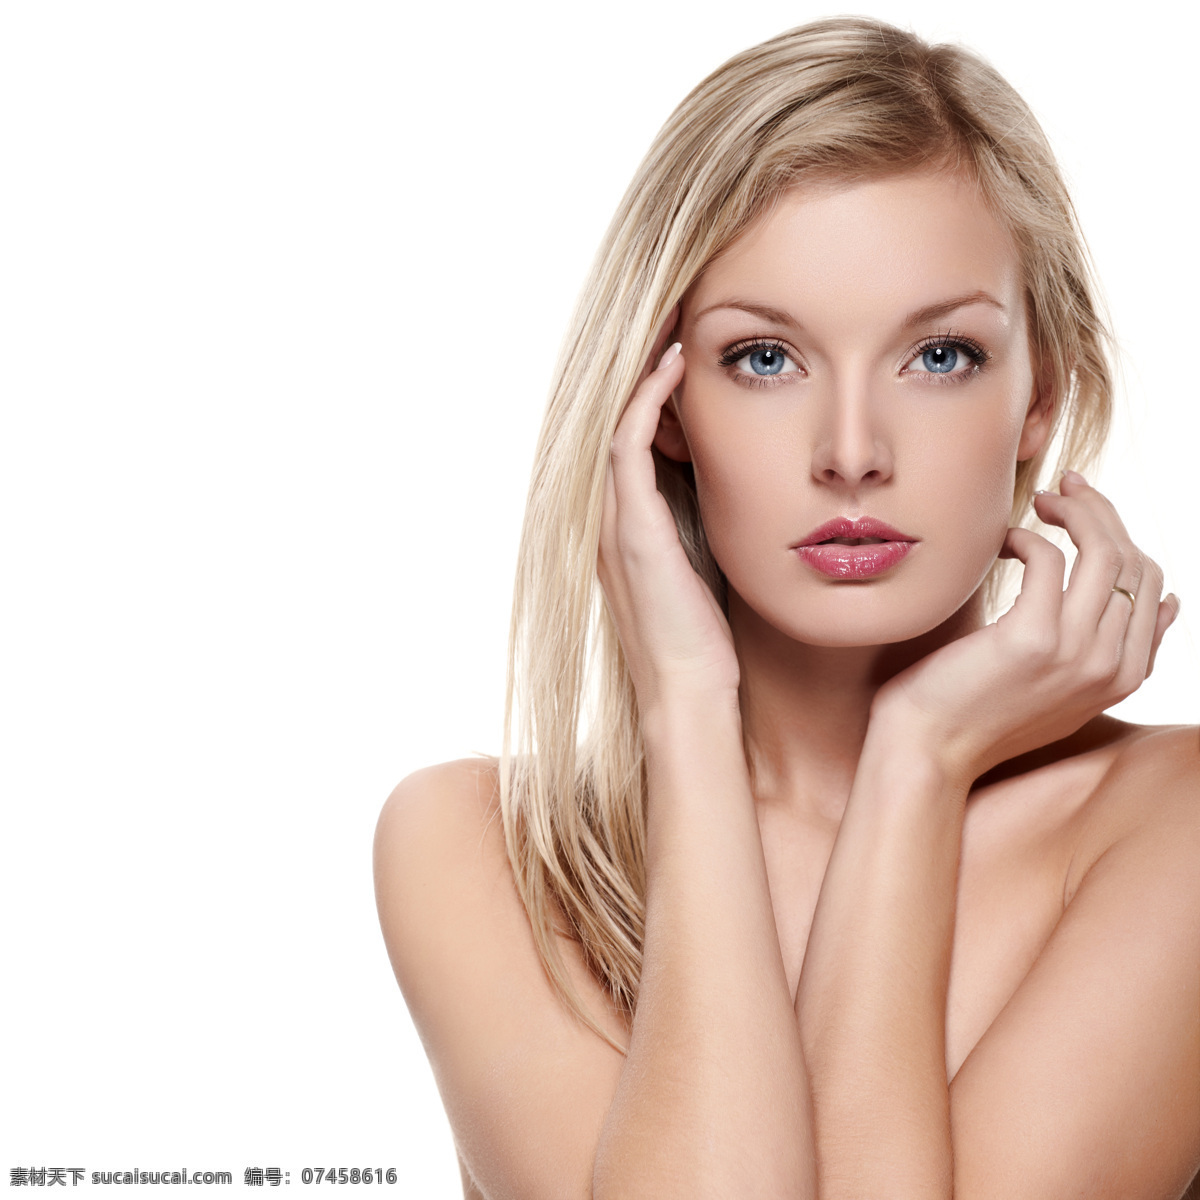 性感 白皙 美女图片 外国女性 女人 性感美女 时尚美女 美容护肤 肌肤白皙 皮肤美白 模特 人物图片